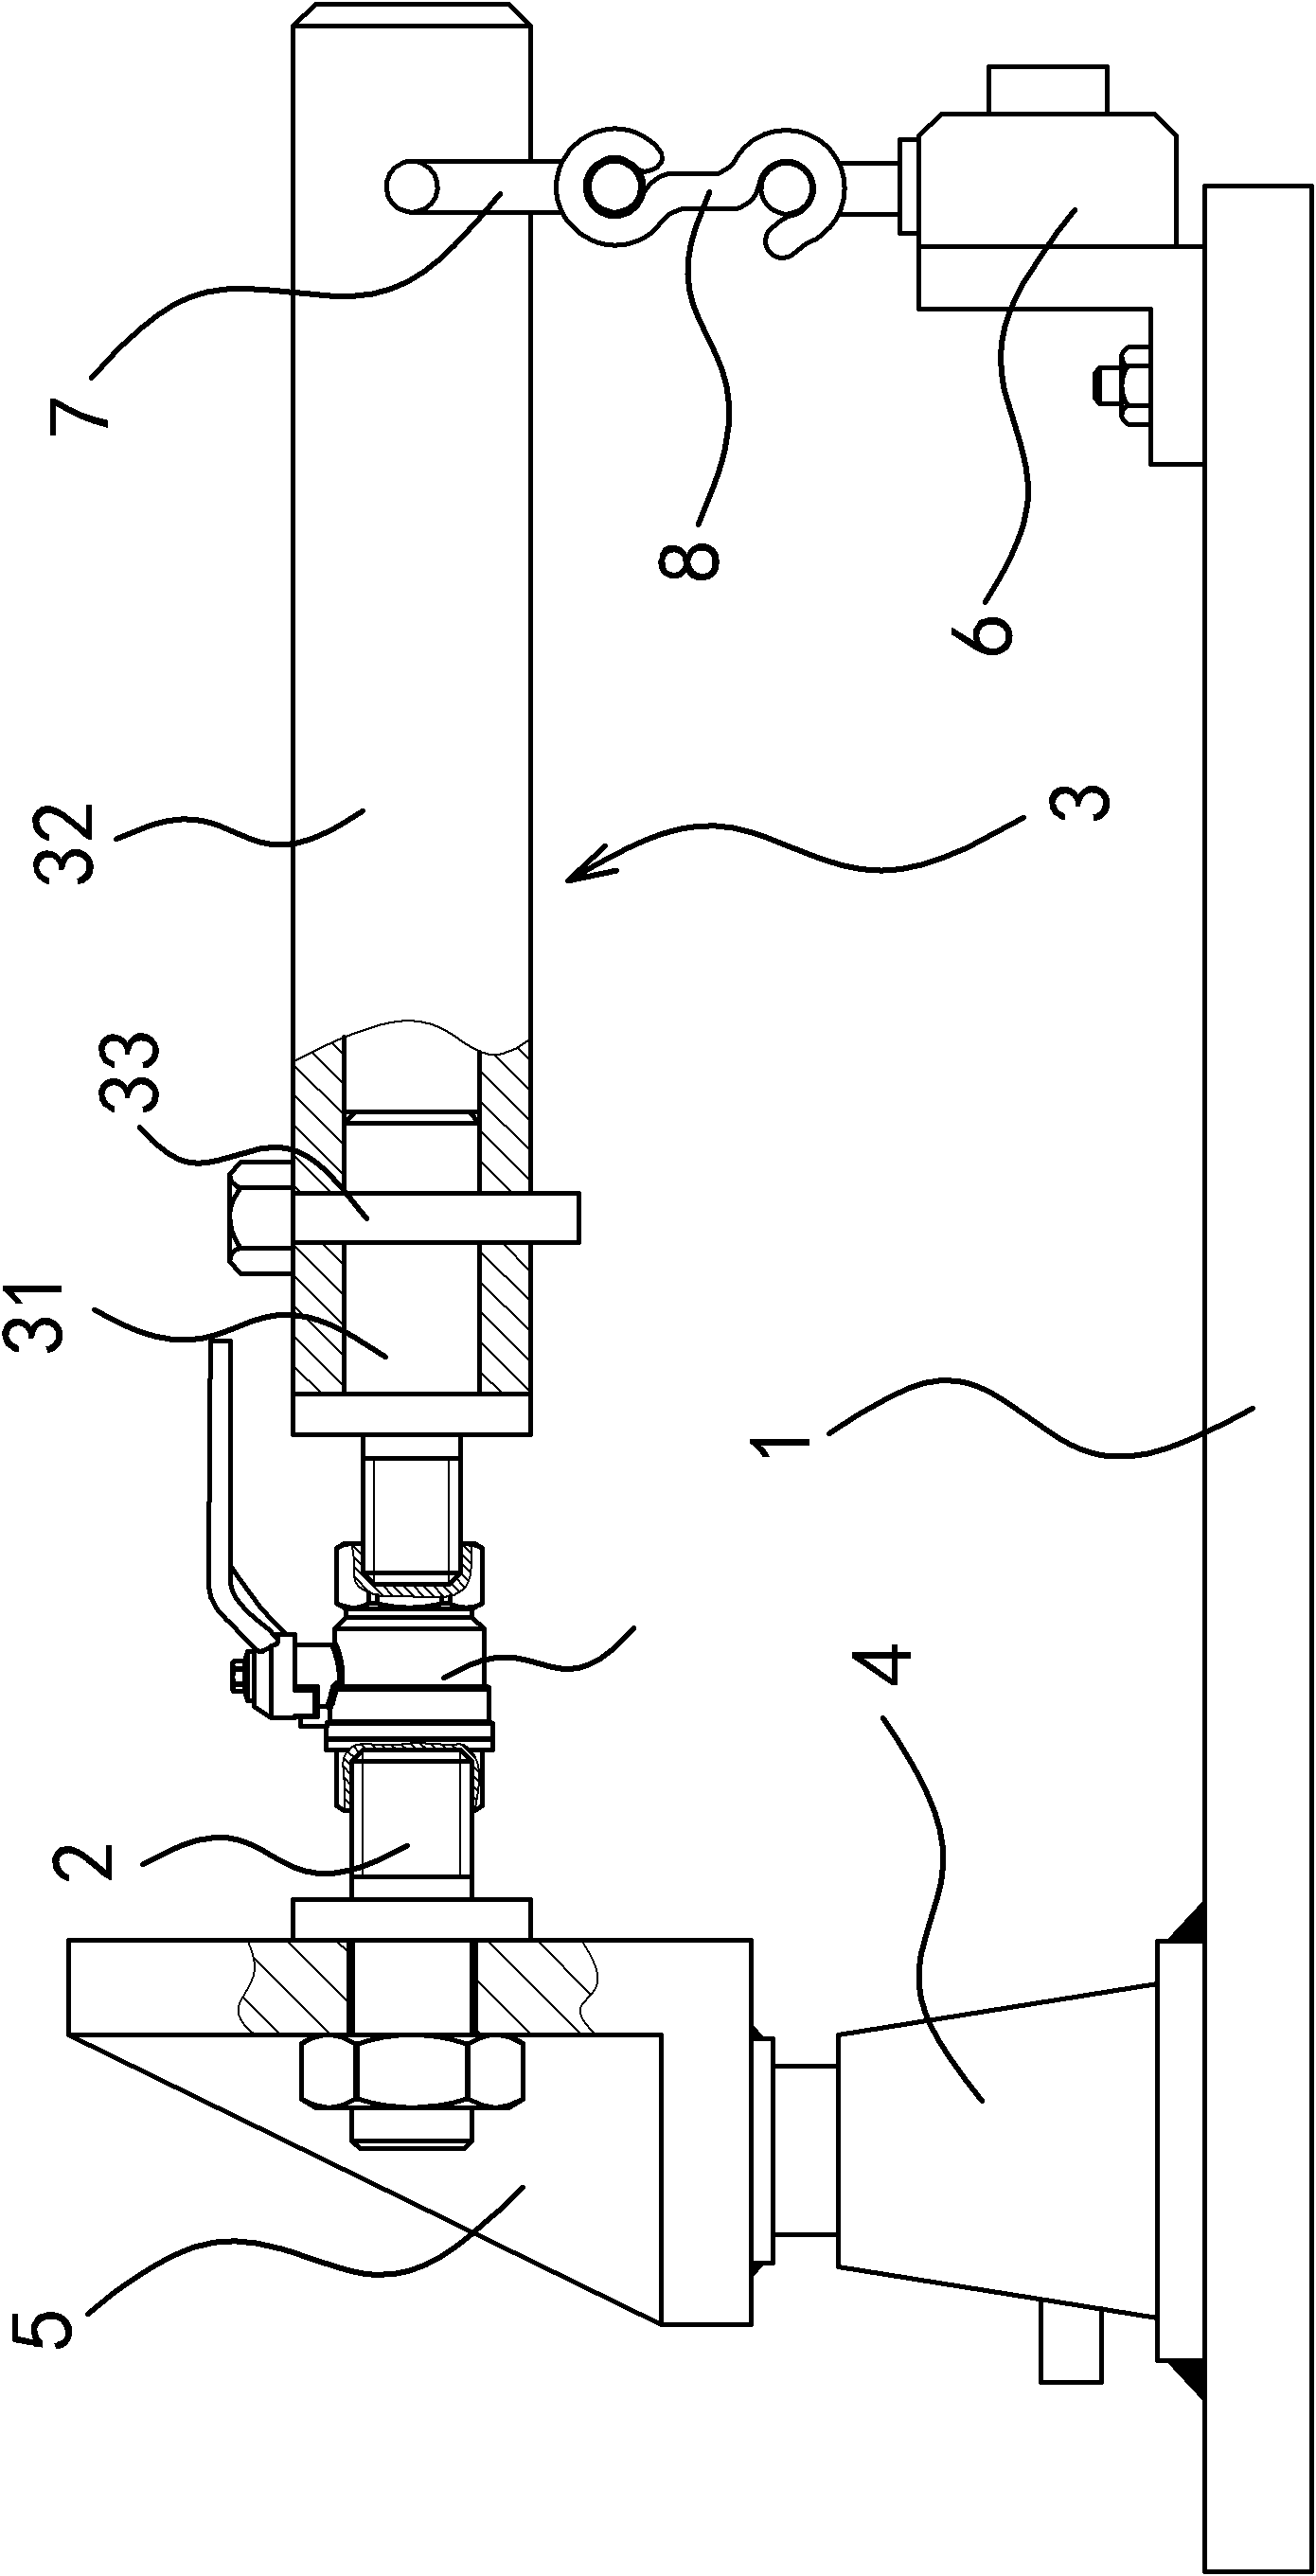 Bending resistance test device for valve